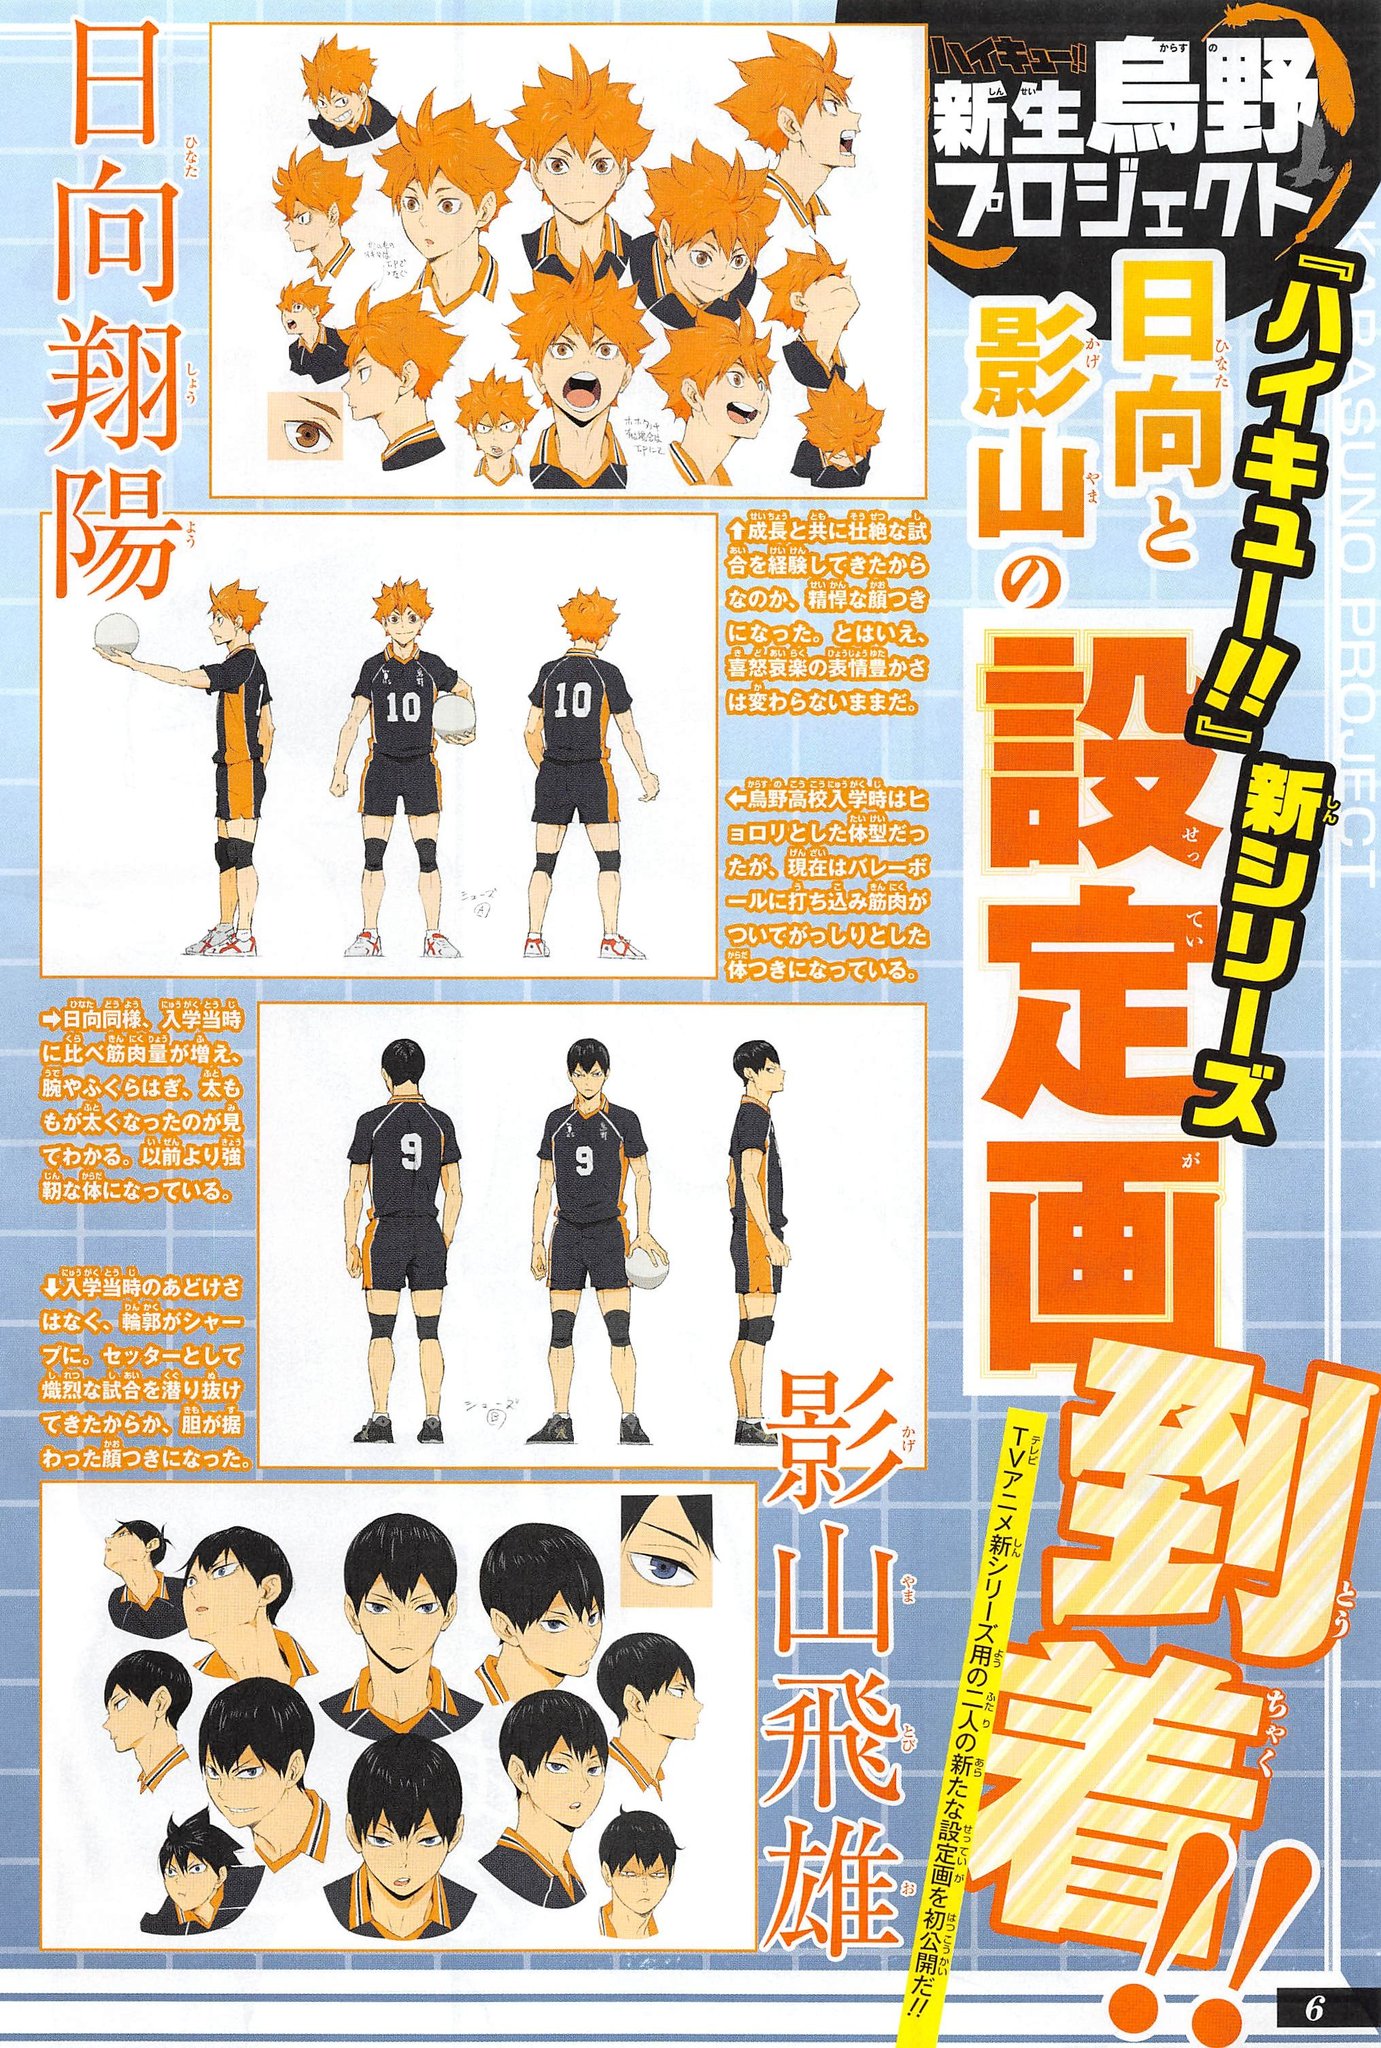 New Haikyuu Season 4 Character Designs Surface Online – haikyuu